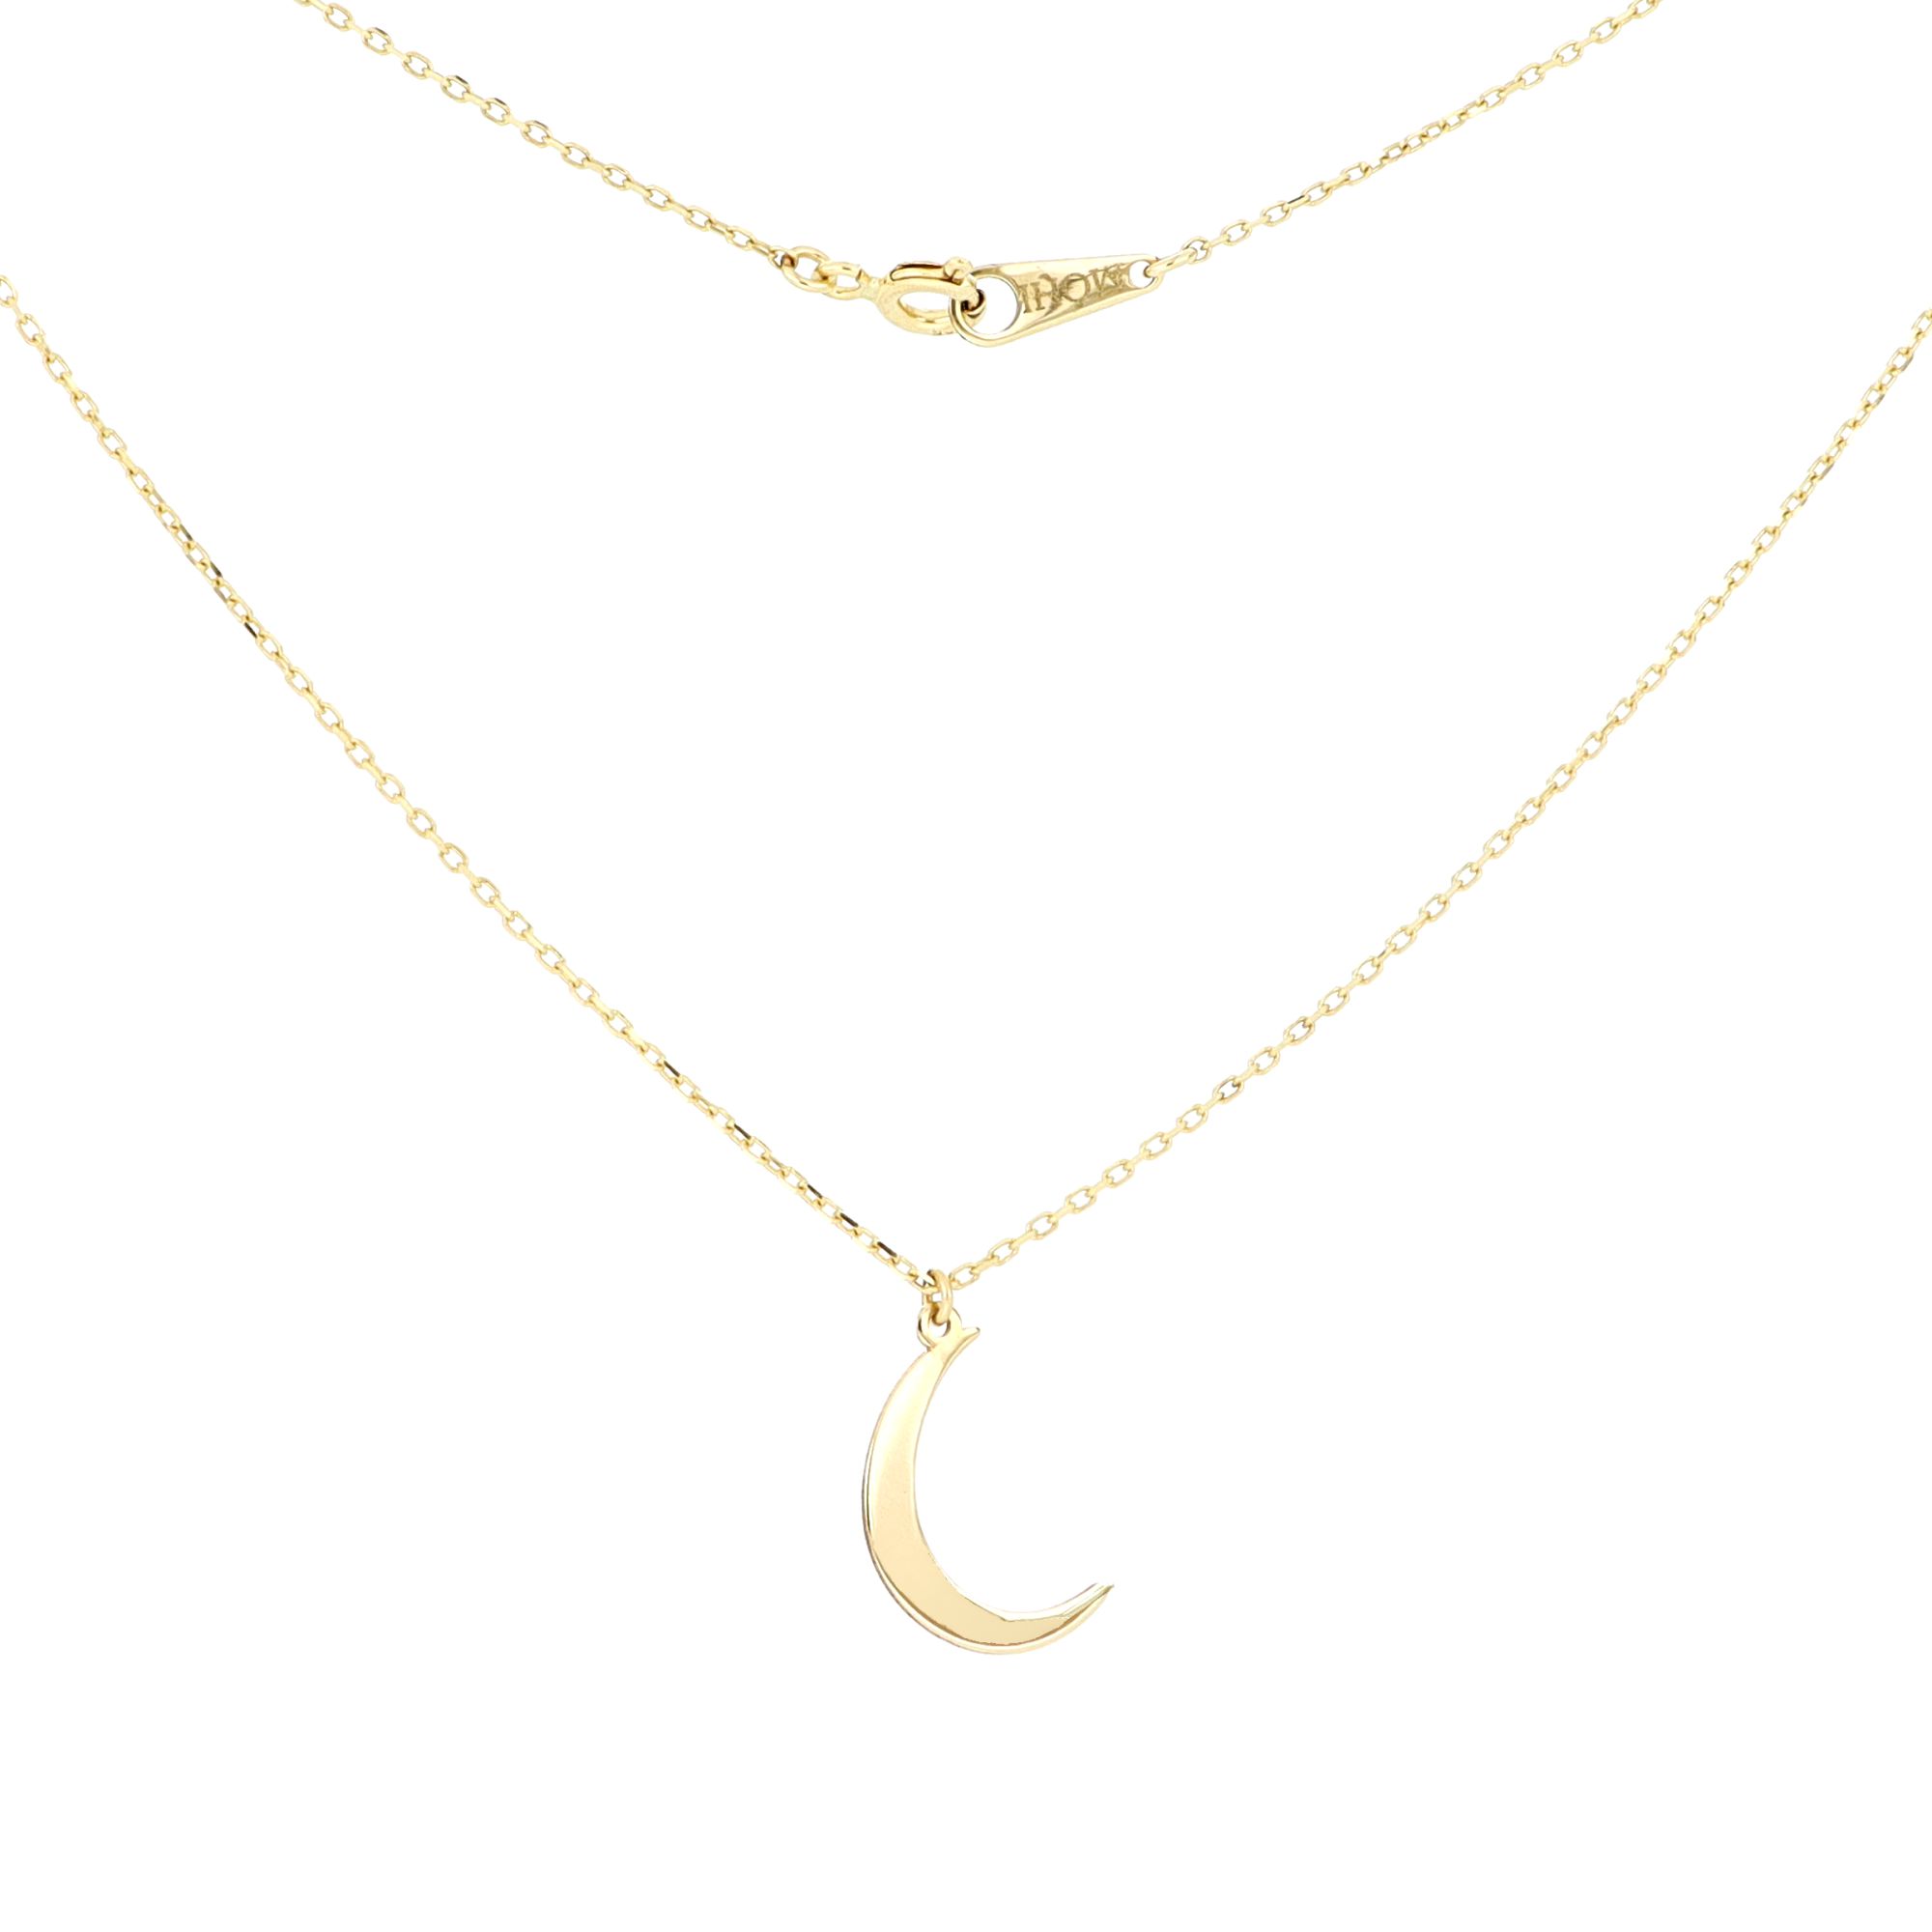 Mohi Jewellery - Lant 14 k, cu pandant forma de semiluna